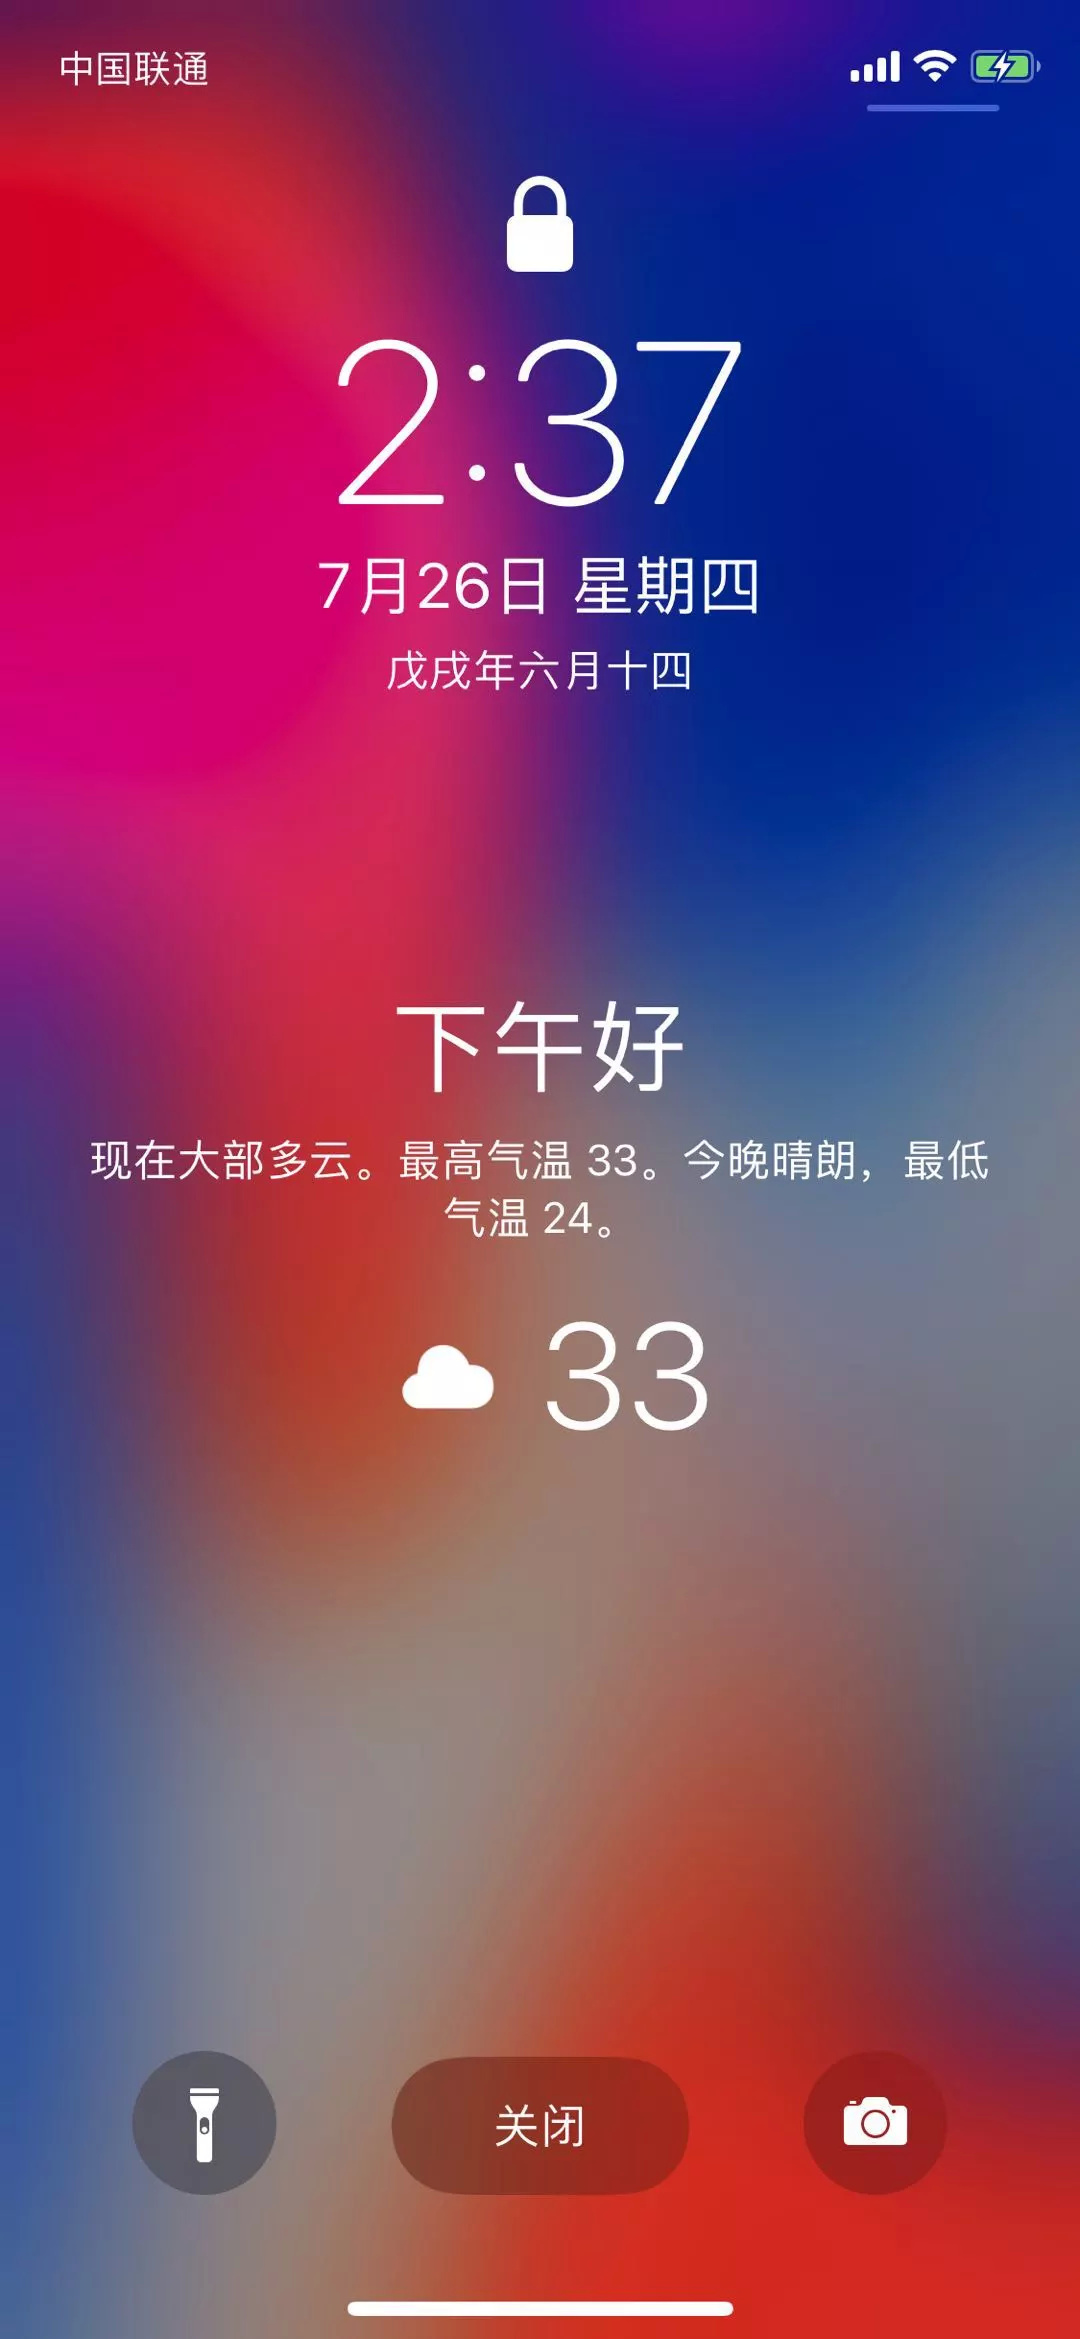 iPhone 如何在锁屏页面显示天气详情？